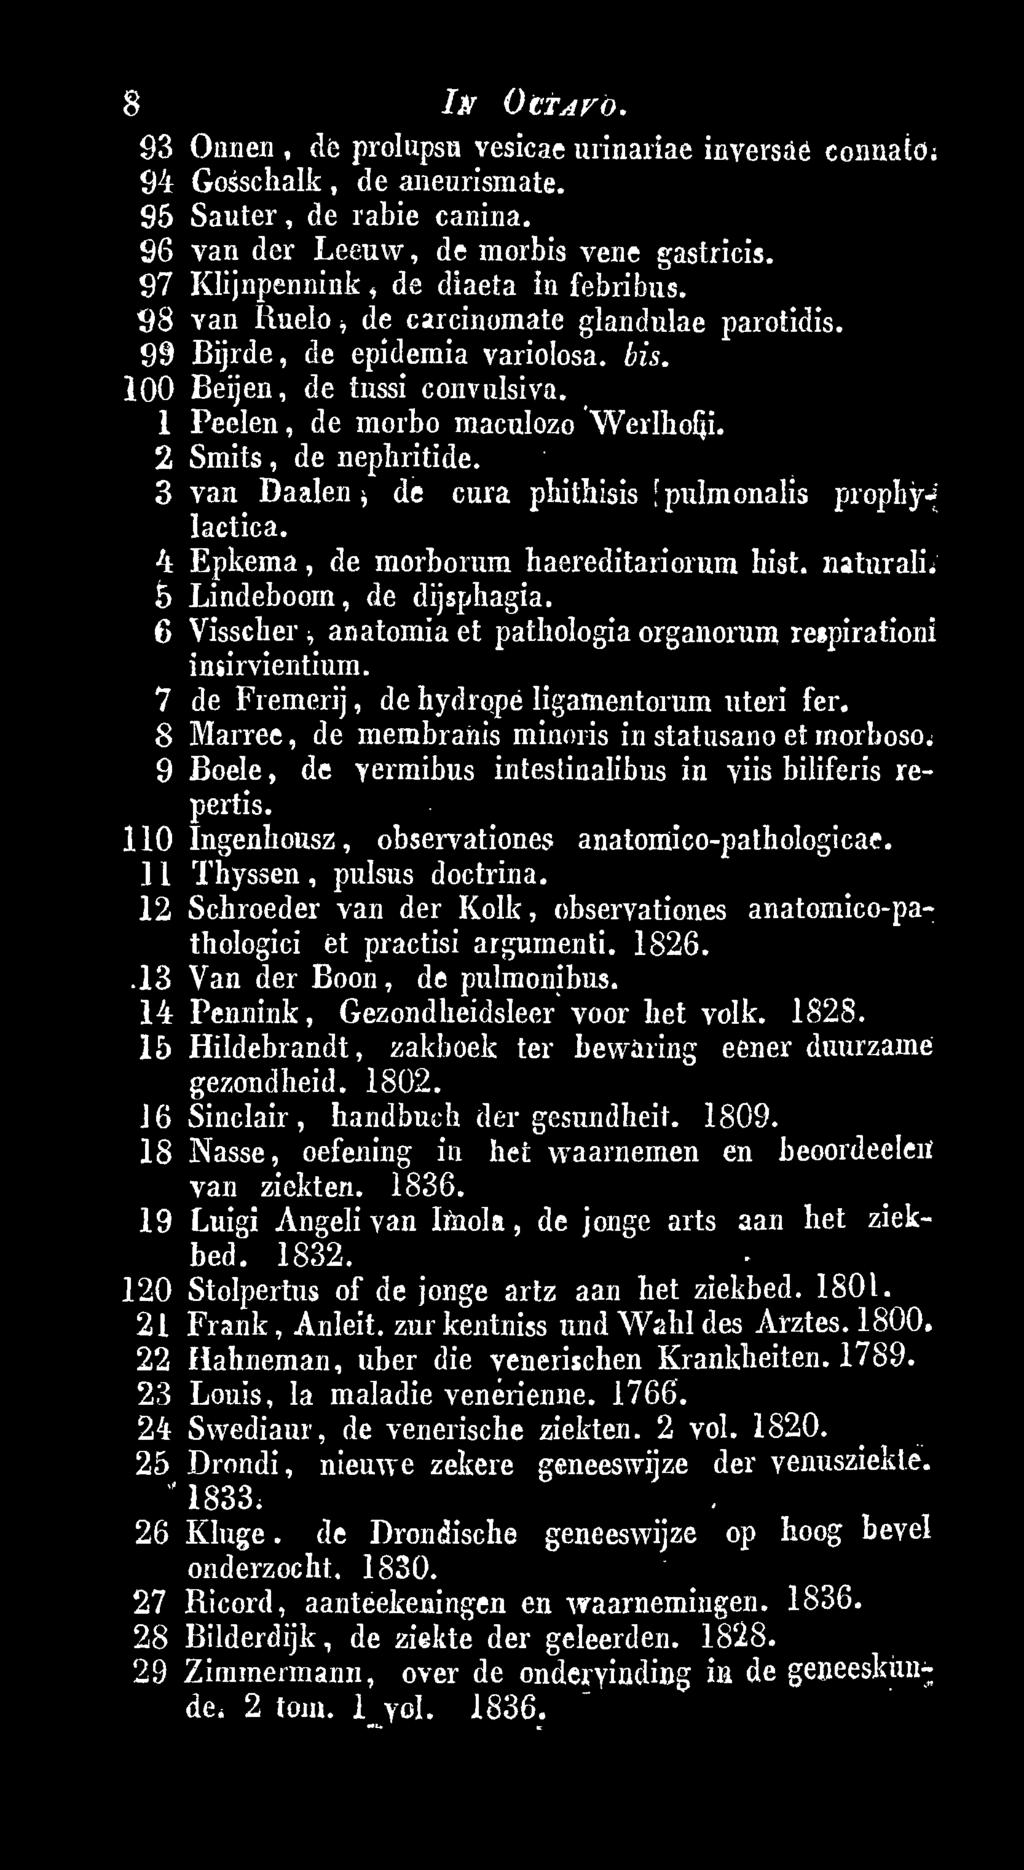 9 Boele, de yermibus intestinalibus in viis biliferis repertis. 110 Ingenhousz, observationes anatomico-pathologicae. ] 1 Thyssen, pulsus doctrina.